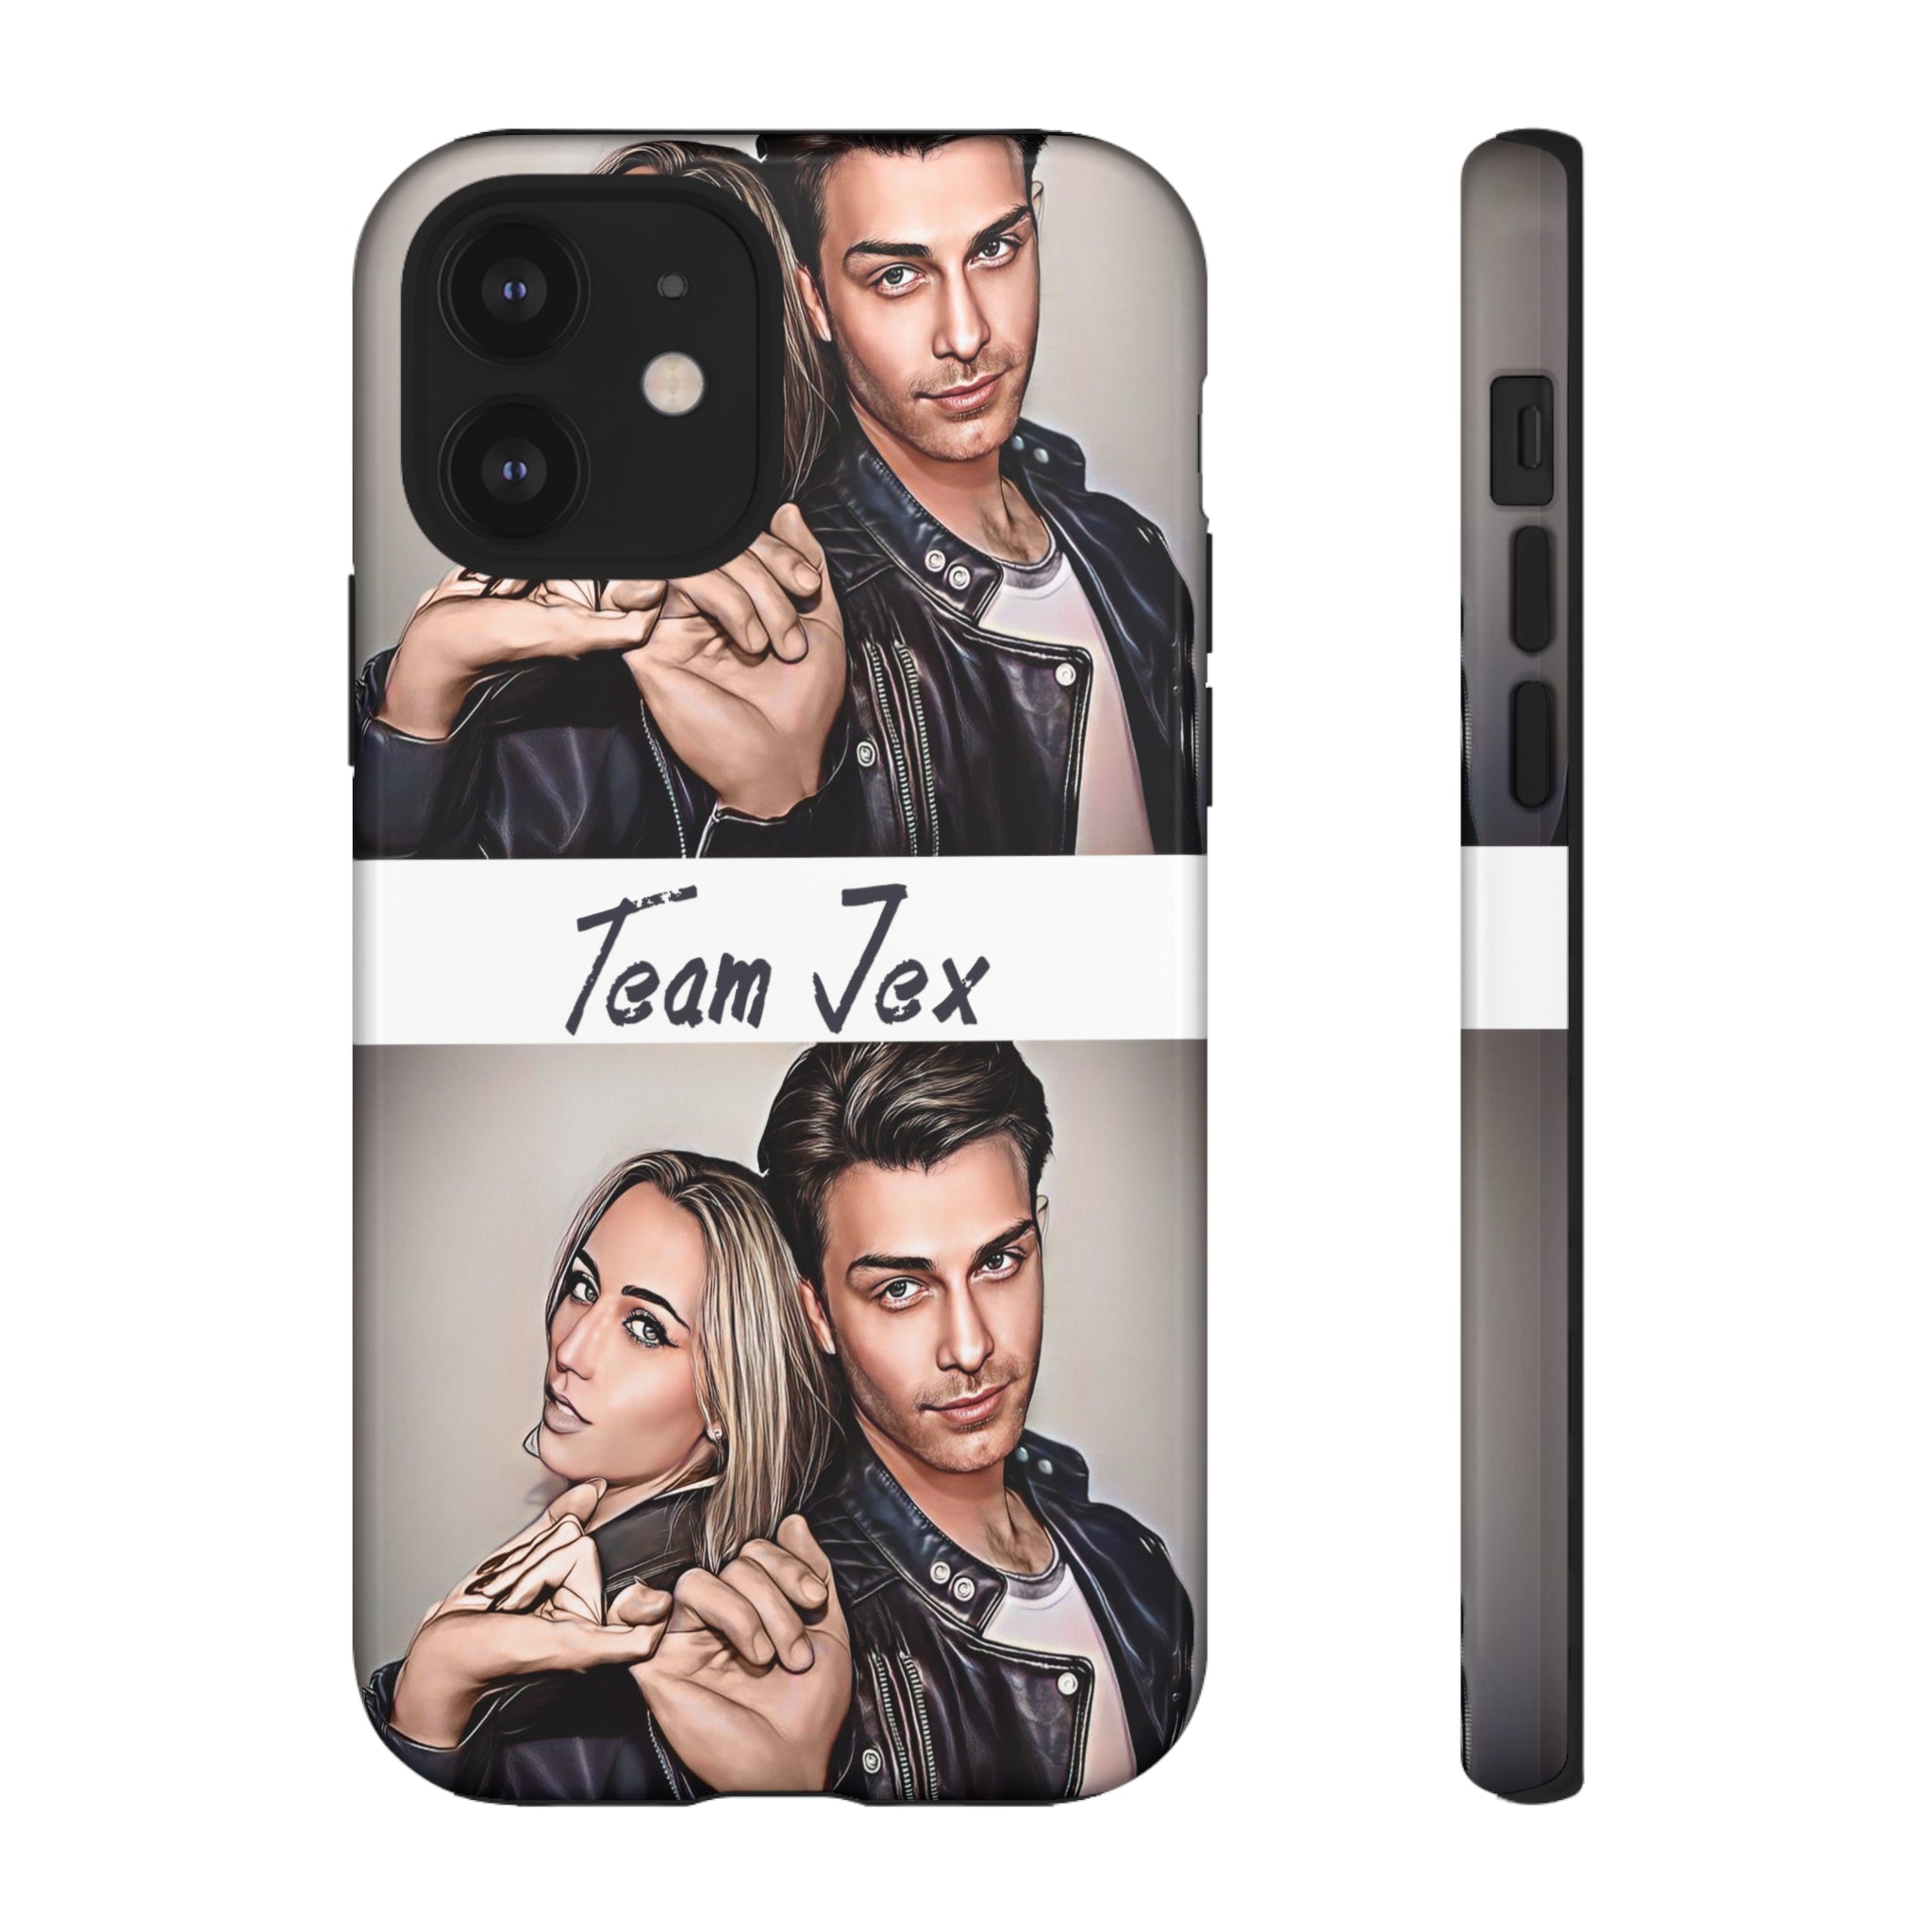 Team Jex Tough Phone Cases